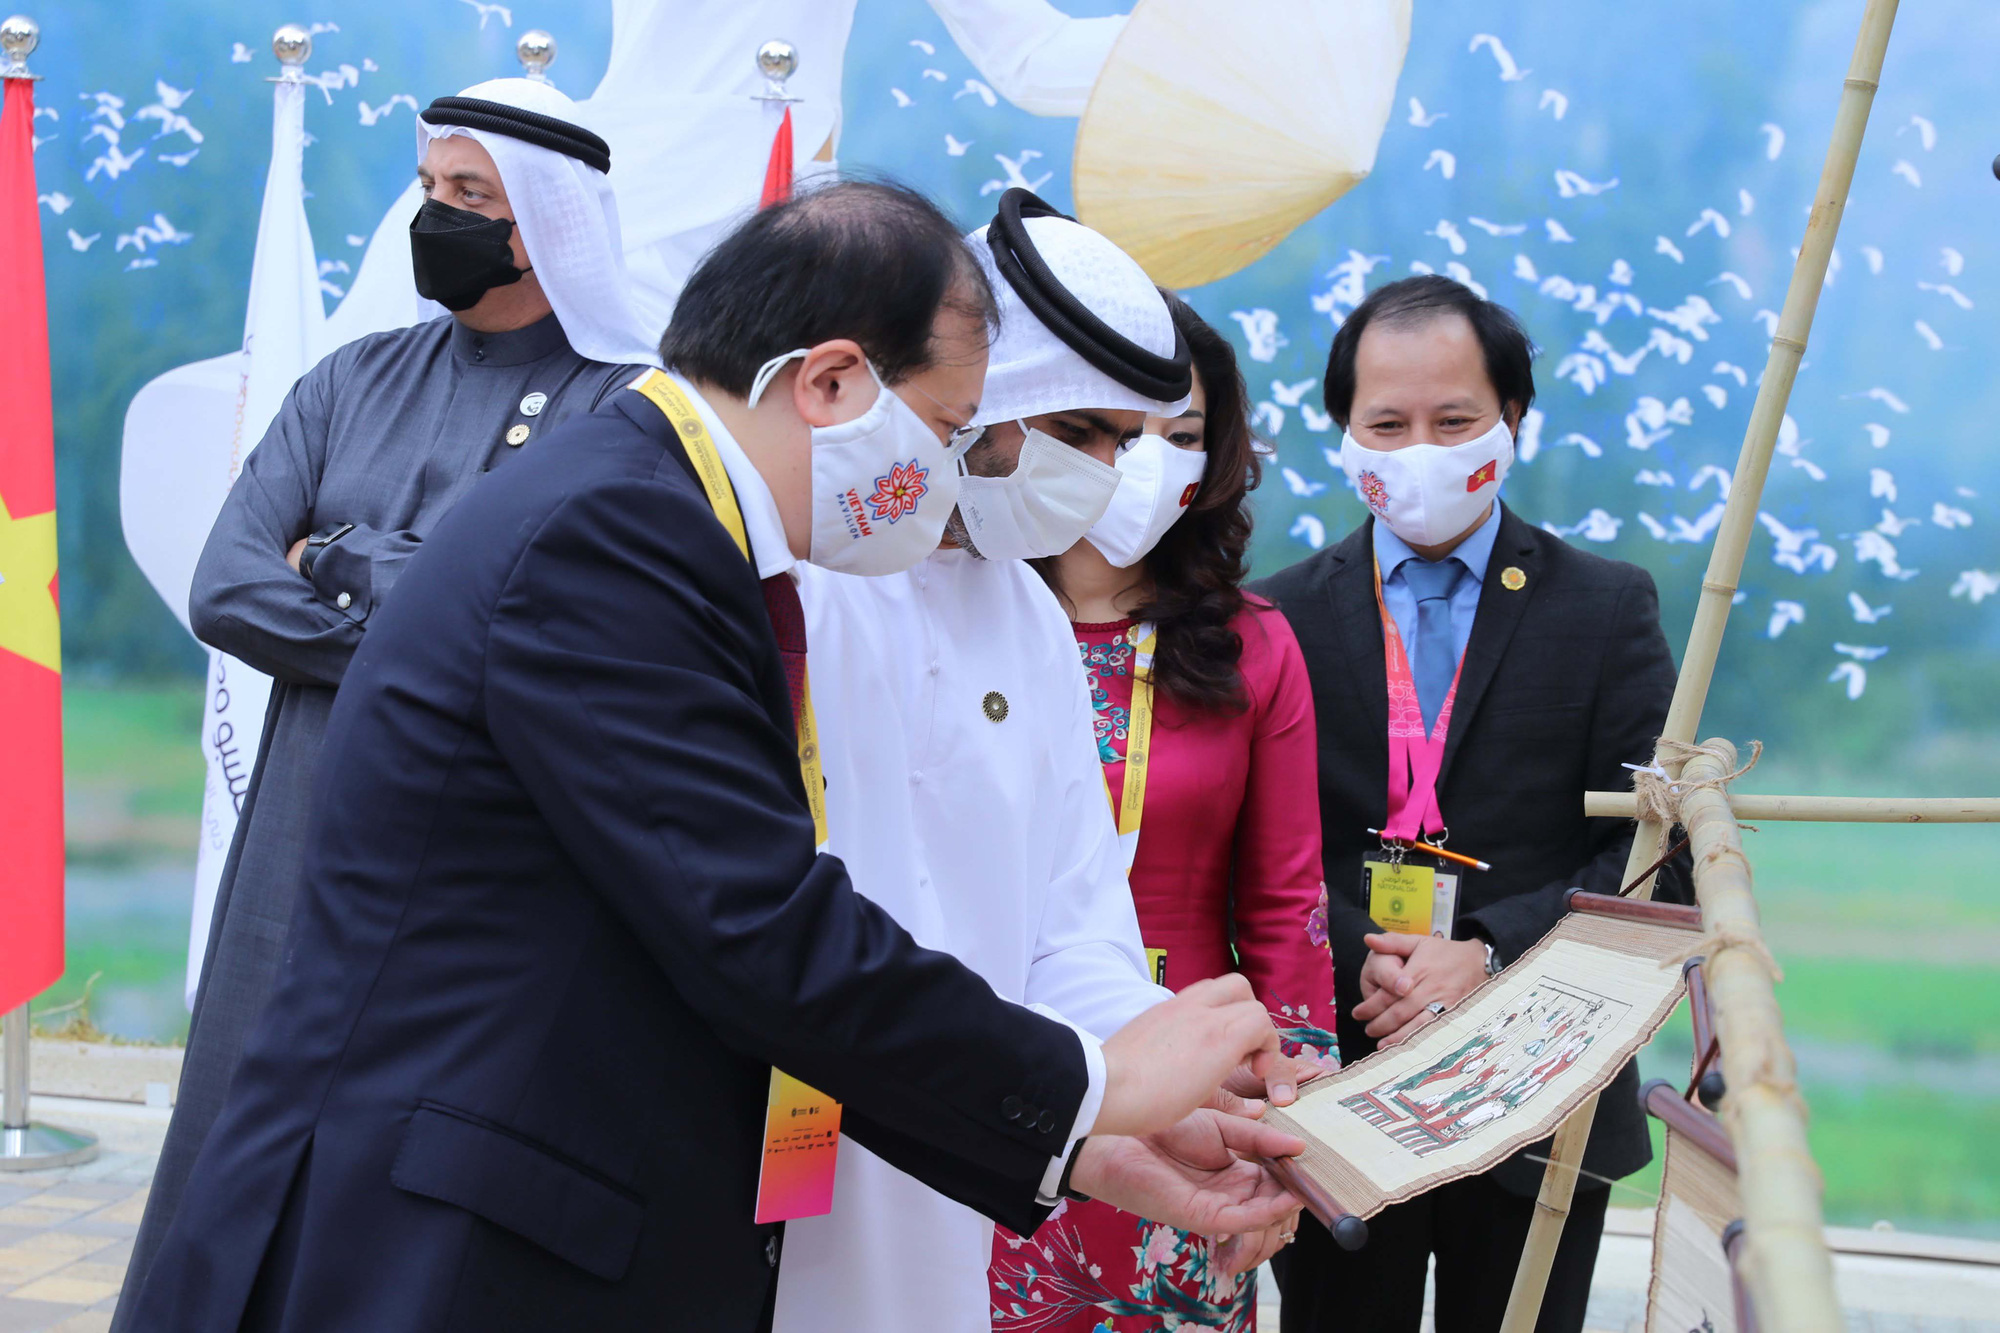 Hàng loạt sự kiện đặc sắc trong Ngày Quốc gia Việt Nam tại EXPO 2020 Dubai - Ảnh 2.